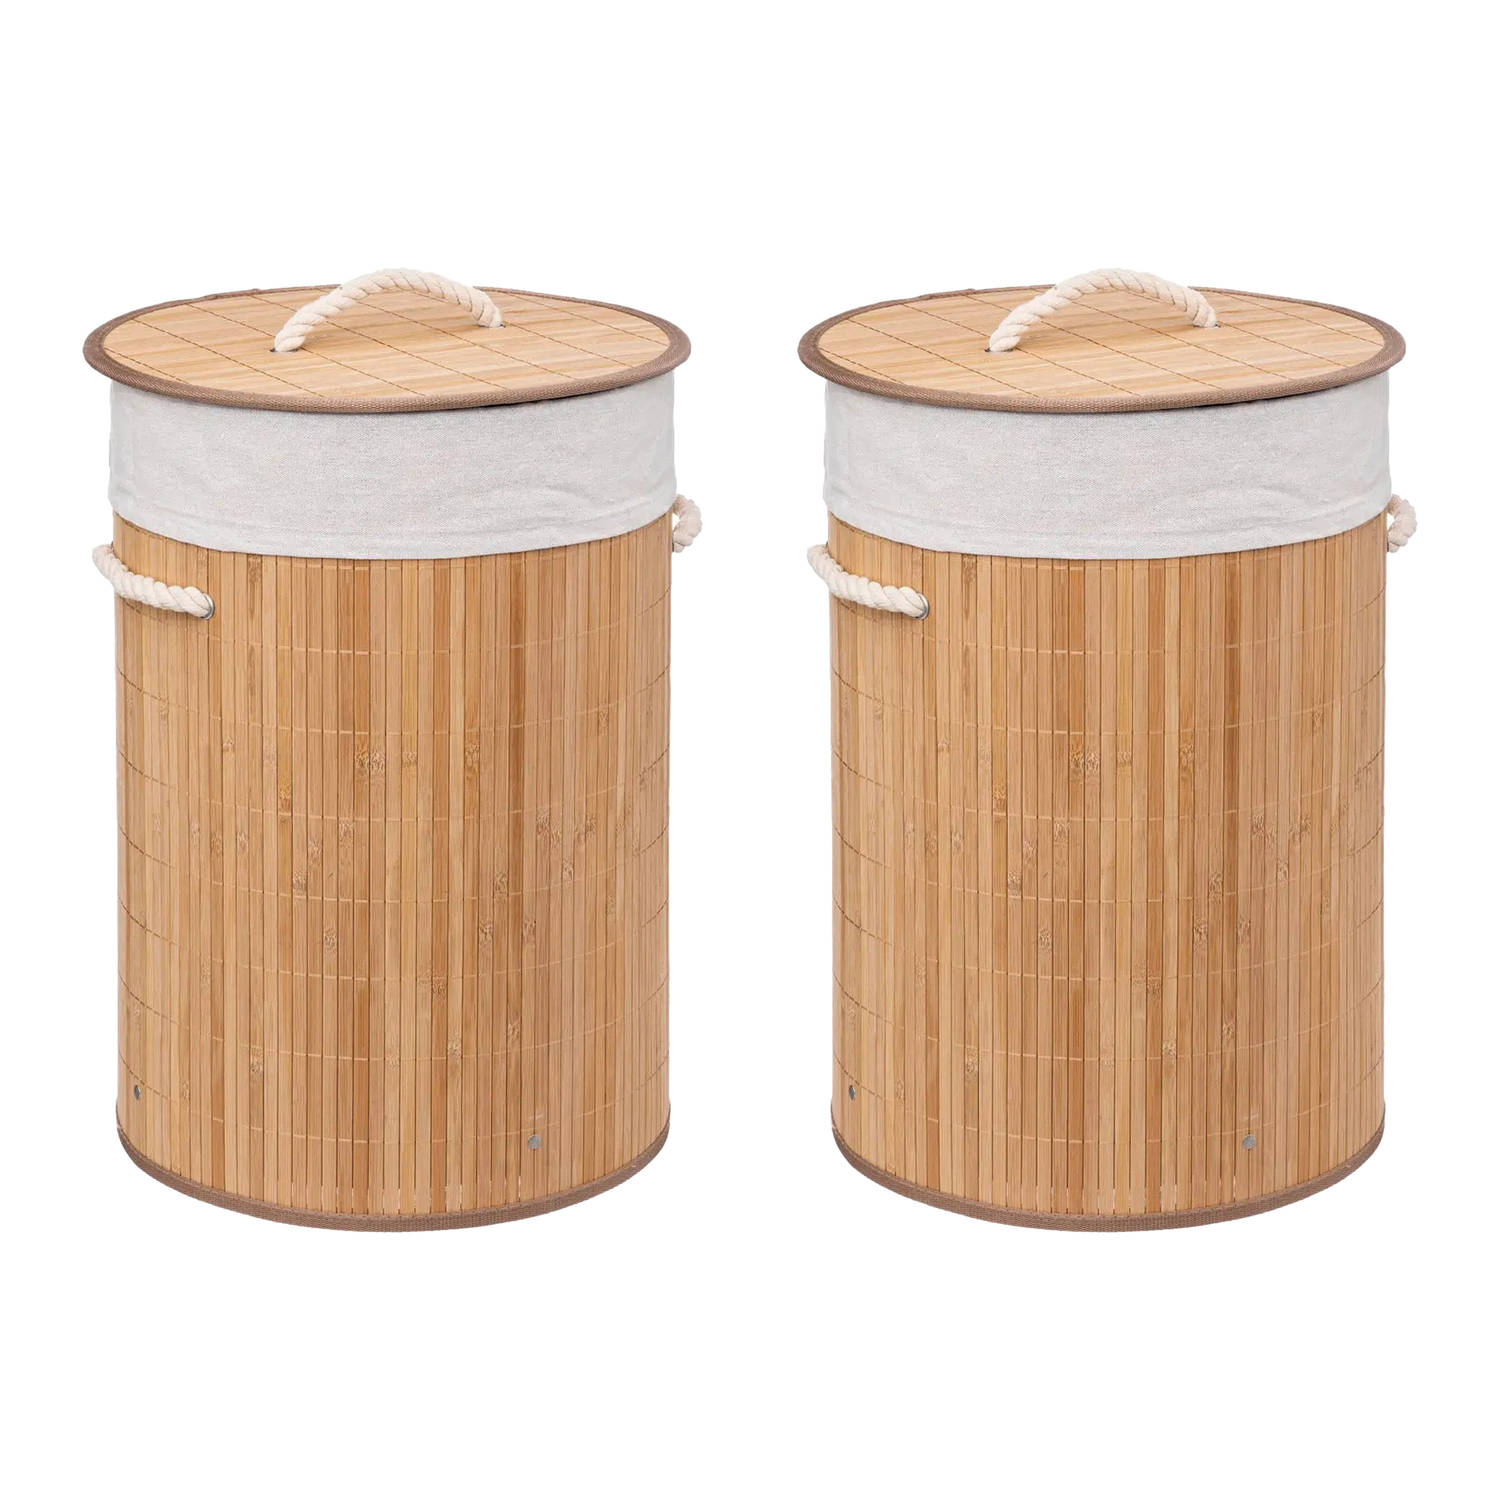 5Five Wasmanden van bamboe - 2x - 48 liter - 35 x 50 cm - met deksel - Wasmanden